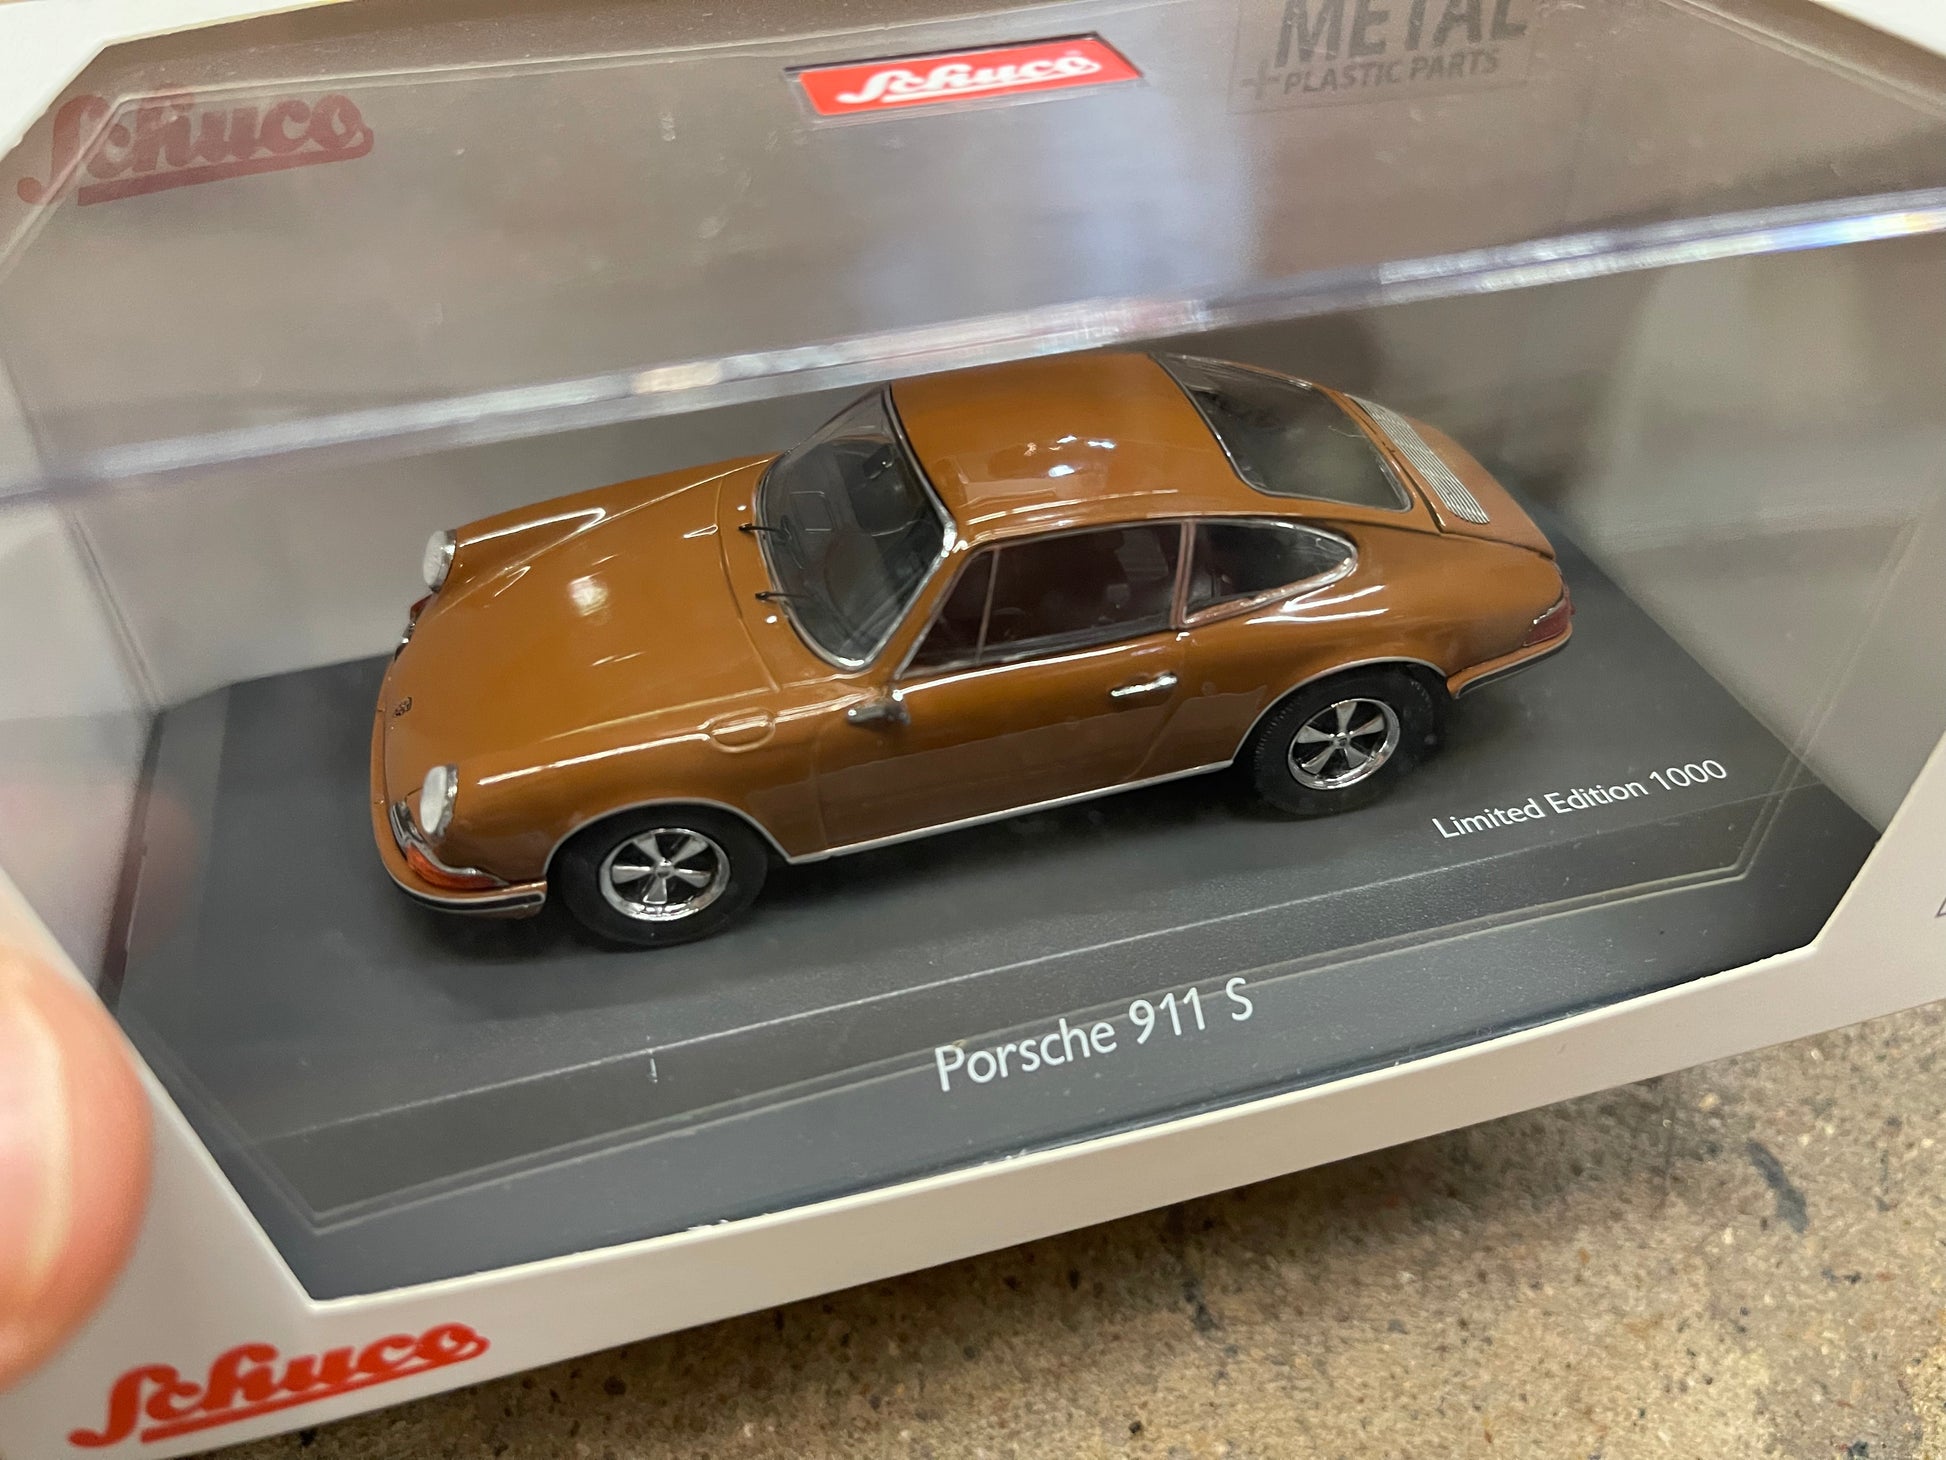 Schuco 450367600 - Porsche 911 S, brown 1:43